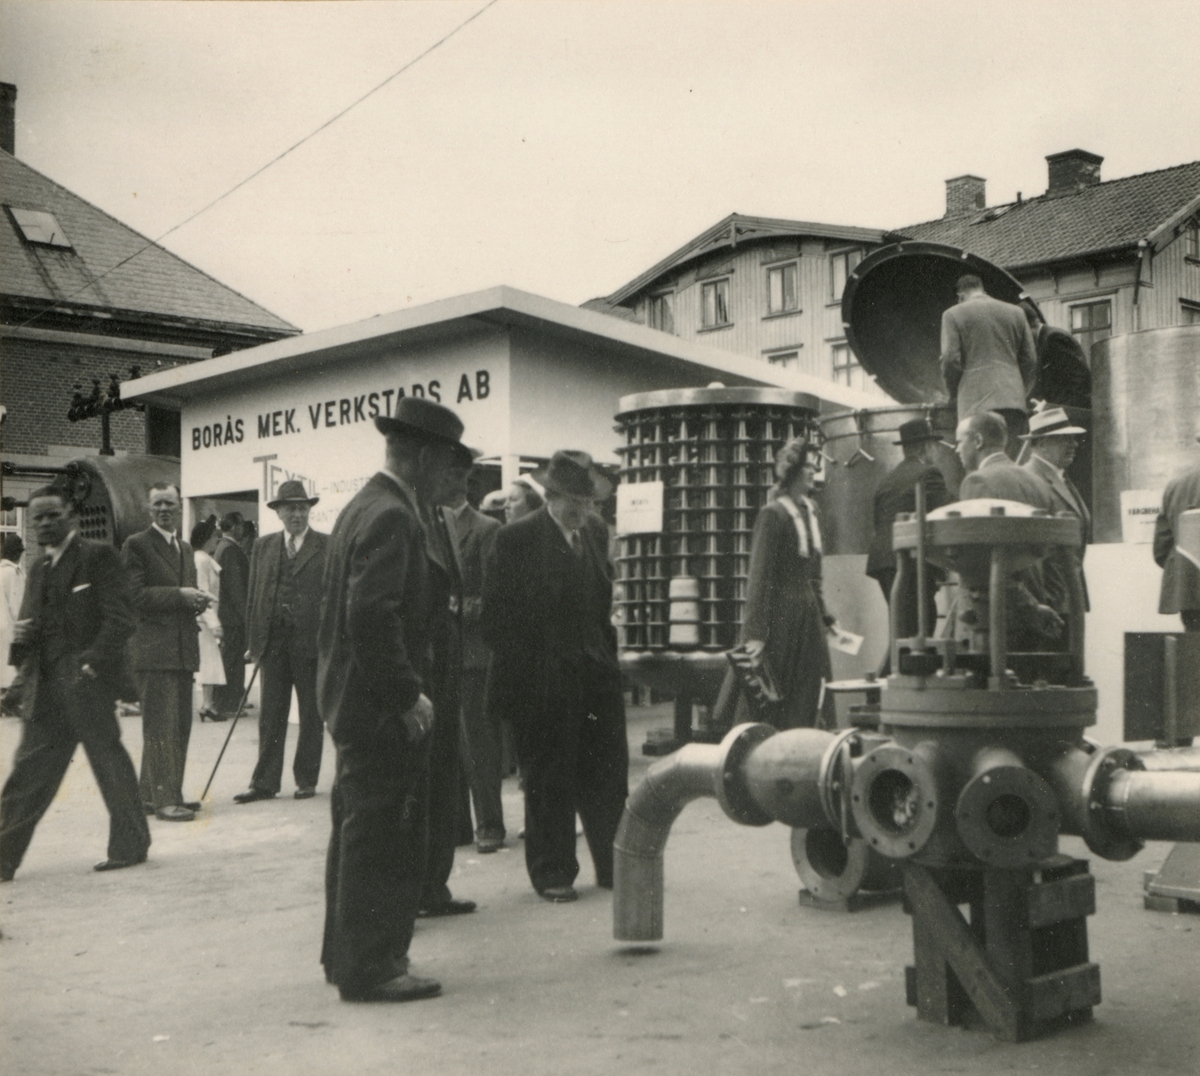 Borås Mekaniska Verkstad visar sina textilmaskiner och kugghjulsautomater vid Boråsmässan 12-21 aug 1949.